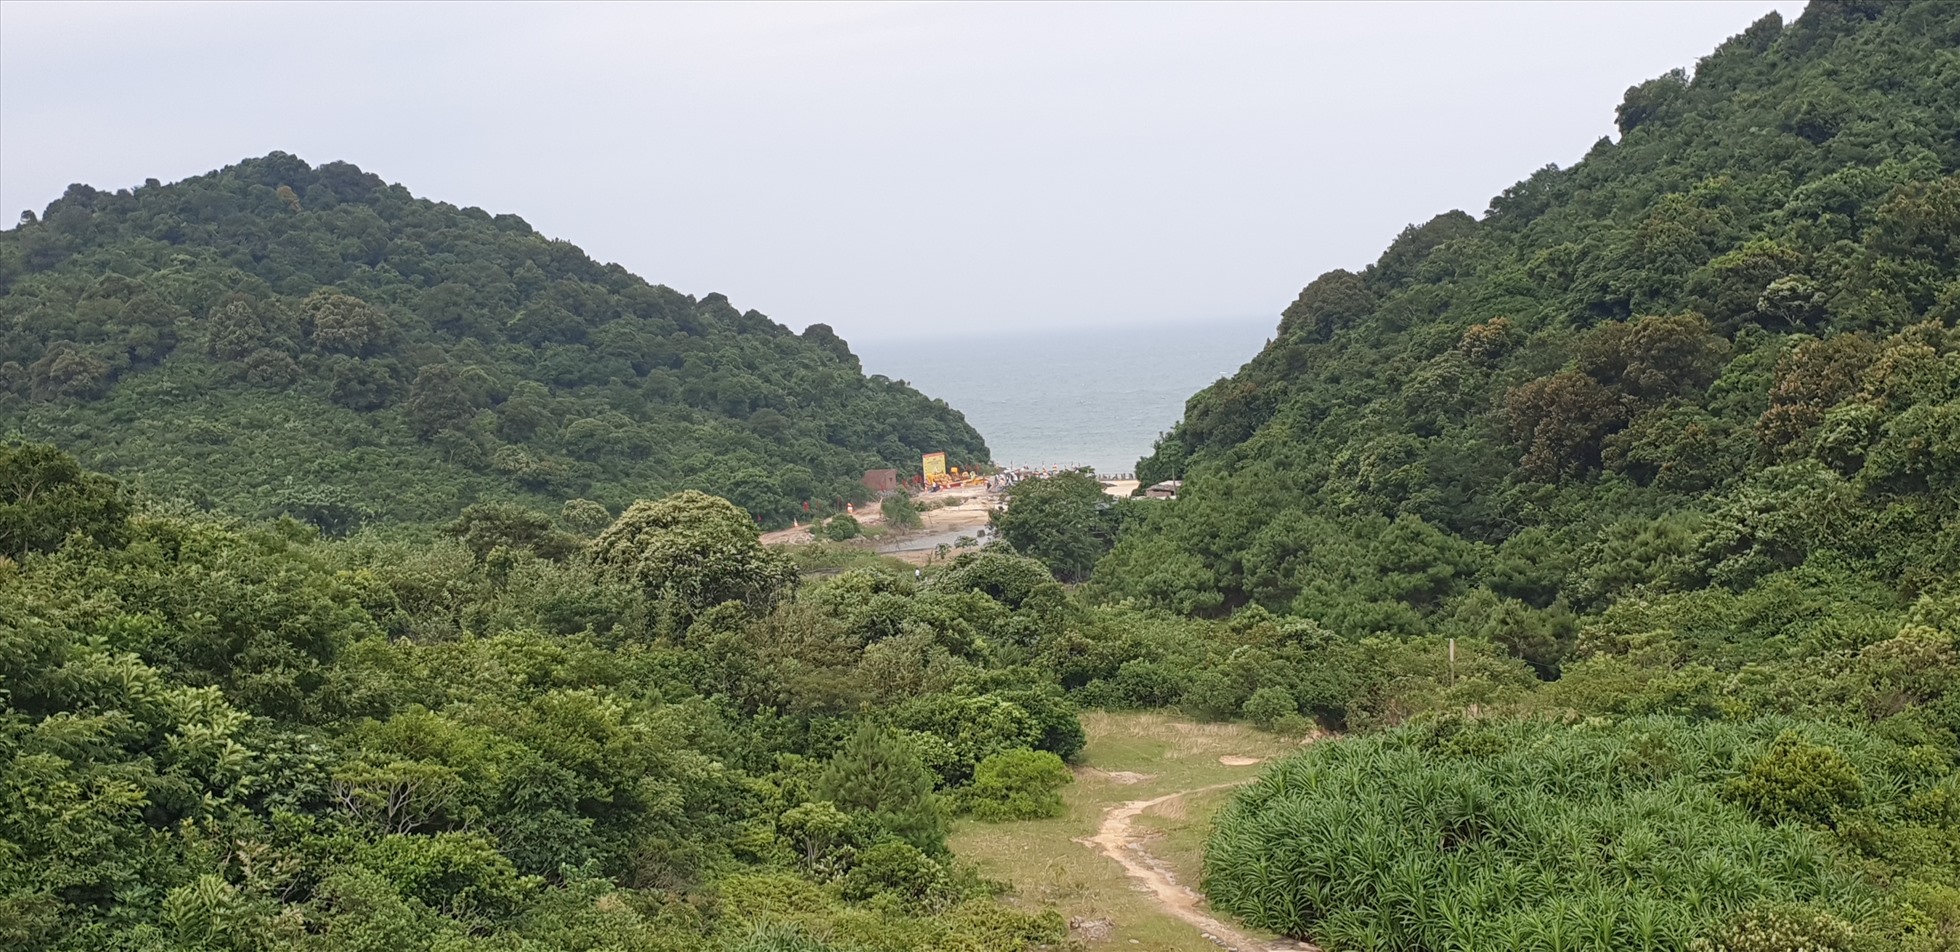 Khu vực được lựa chọn để xây chùa. Ảnh: Nguyễn Hùng